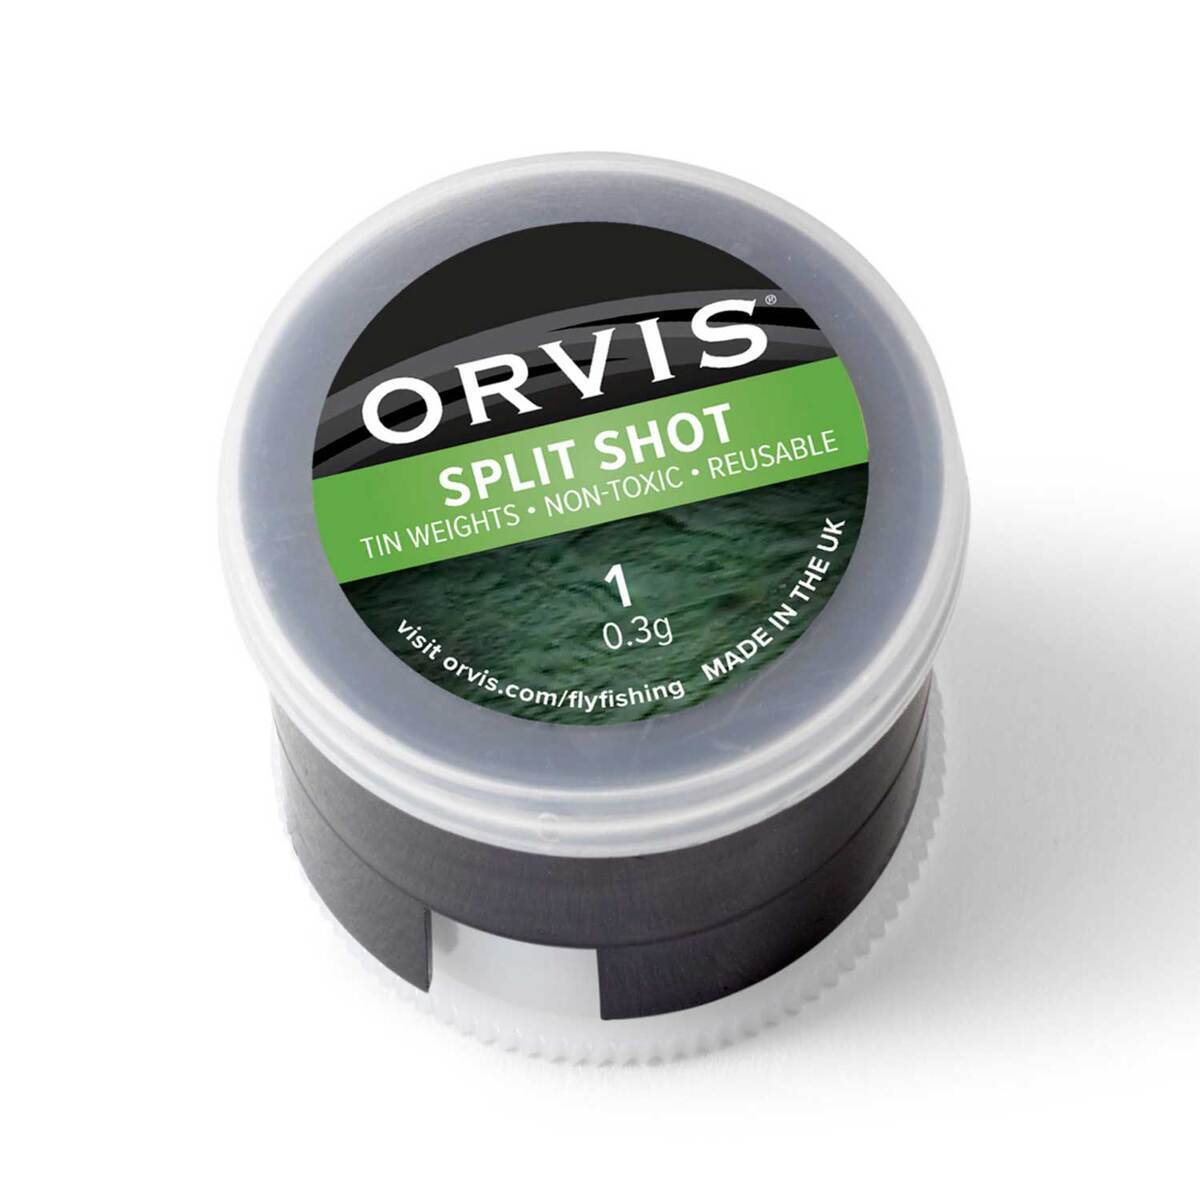 Orvis Non-Toxic Split Shot AB